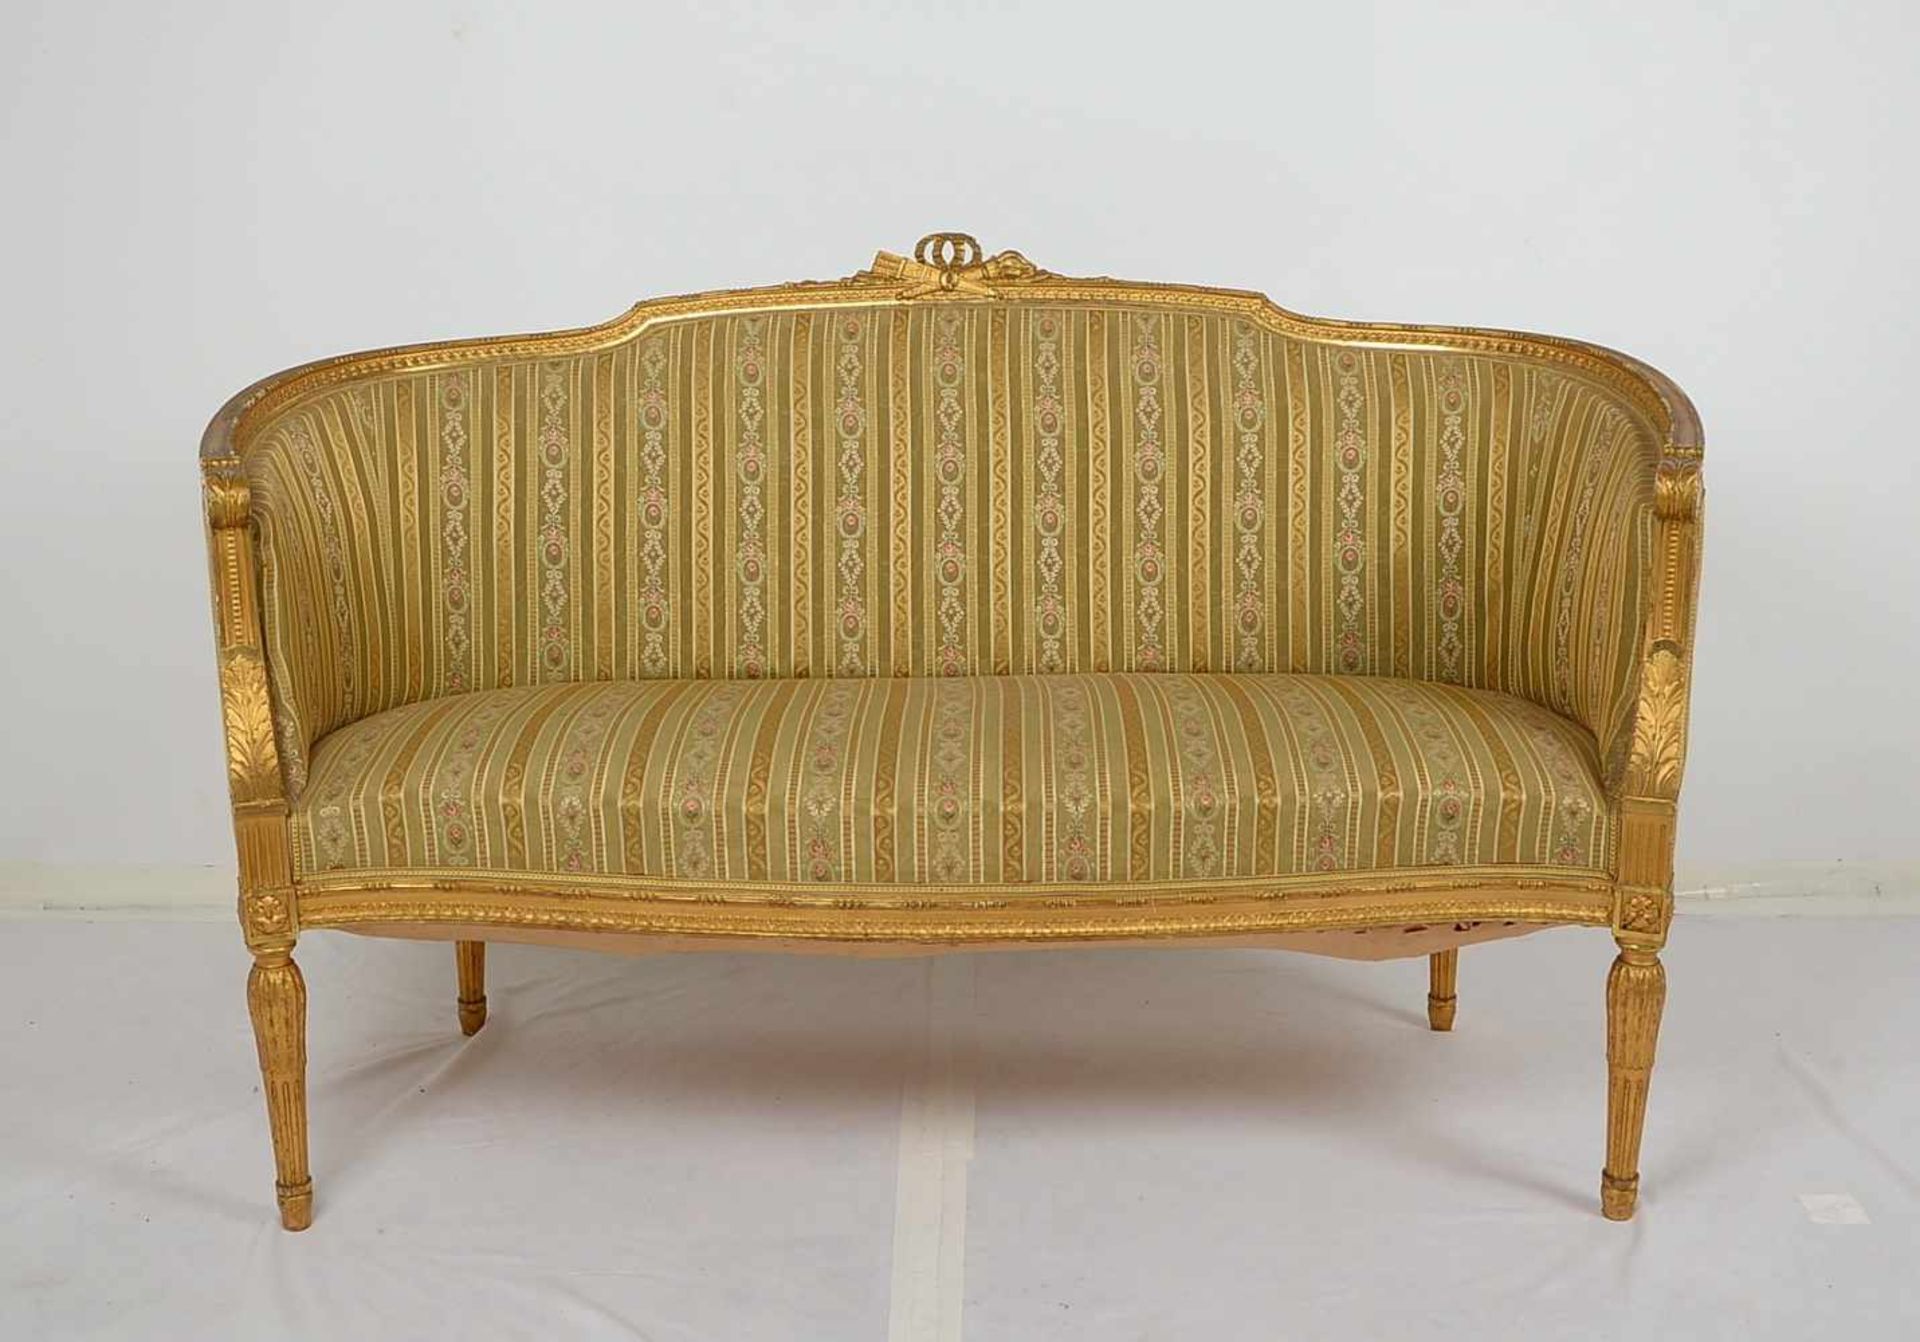 Zweisitzer-Sofa, Louis Seize-Stil, vergoldeter Holzrahmen mit gestreiftem Stoffbezug, Korpus auf